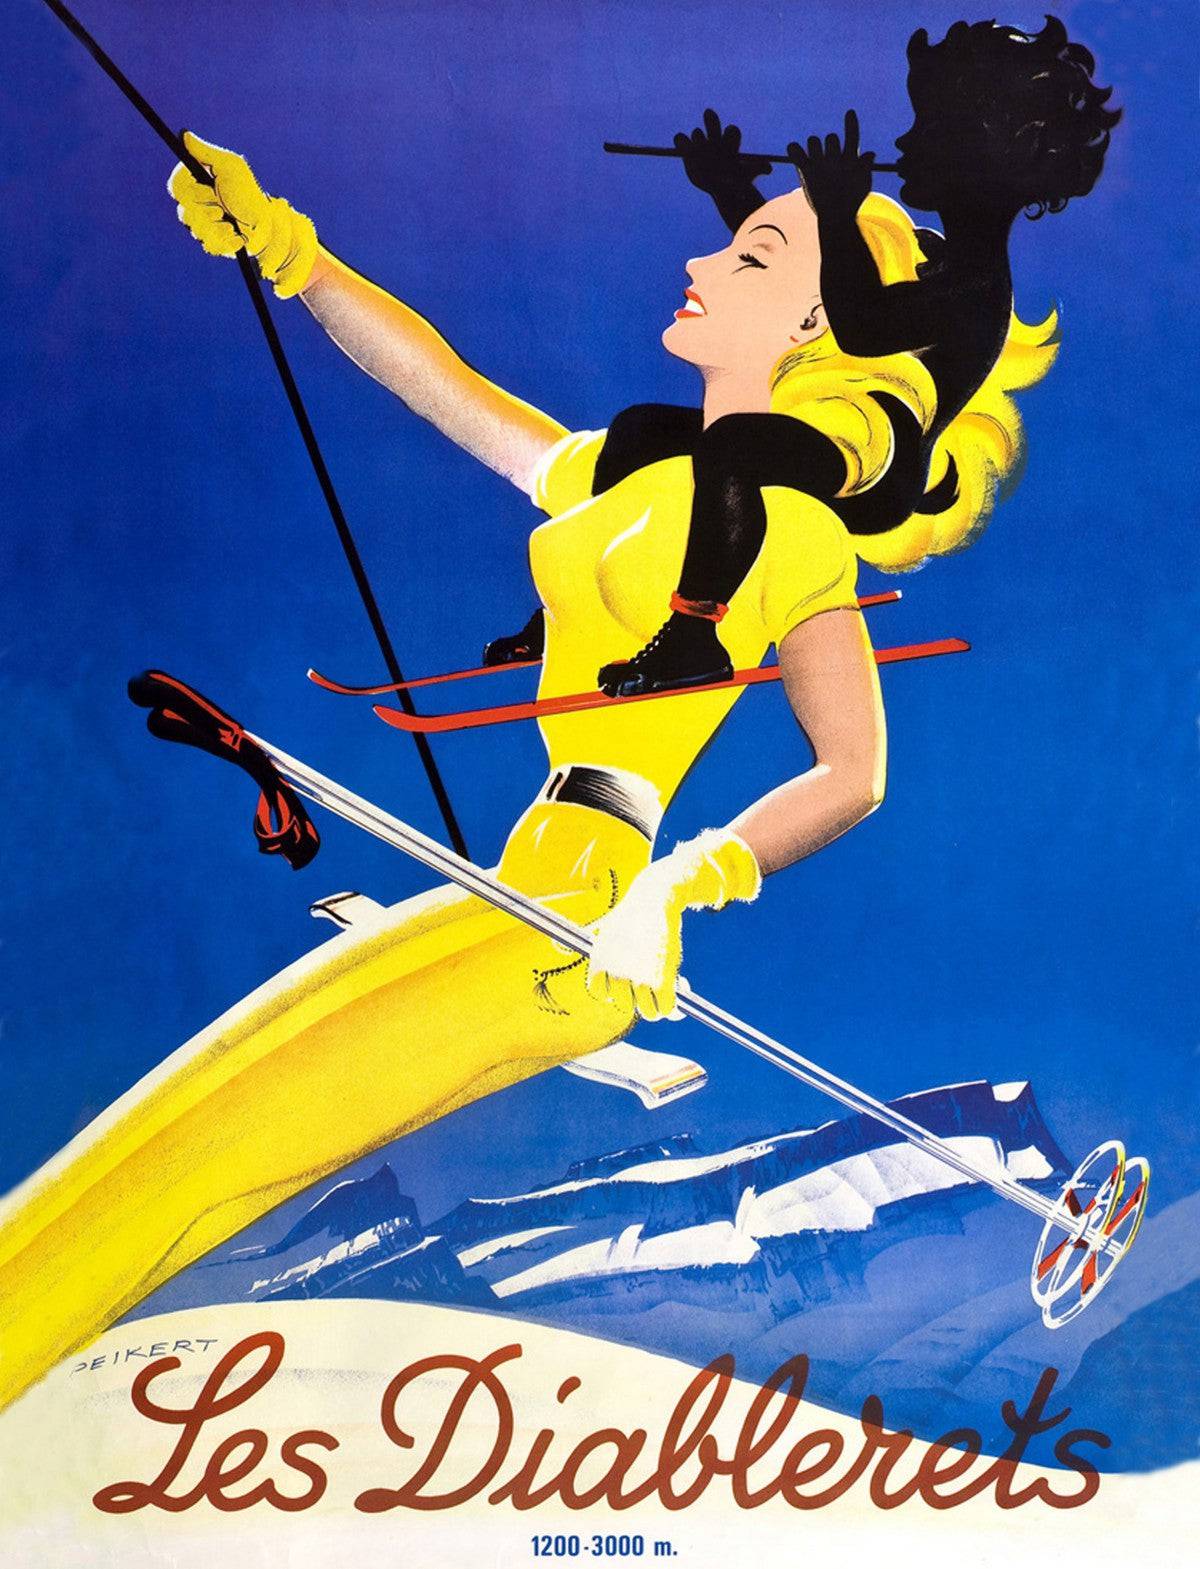 Woman Skiing on Les Diablerets - Powderaddicts